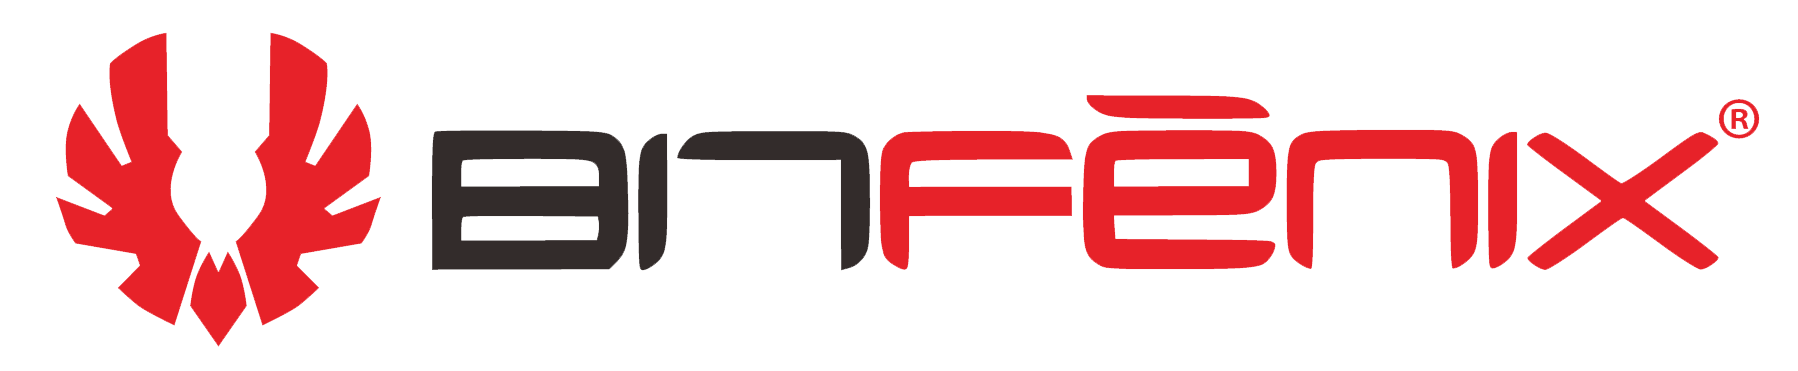 Logo Bitfenix - 01